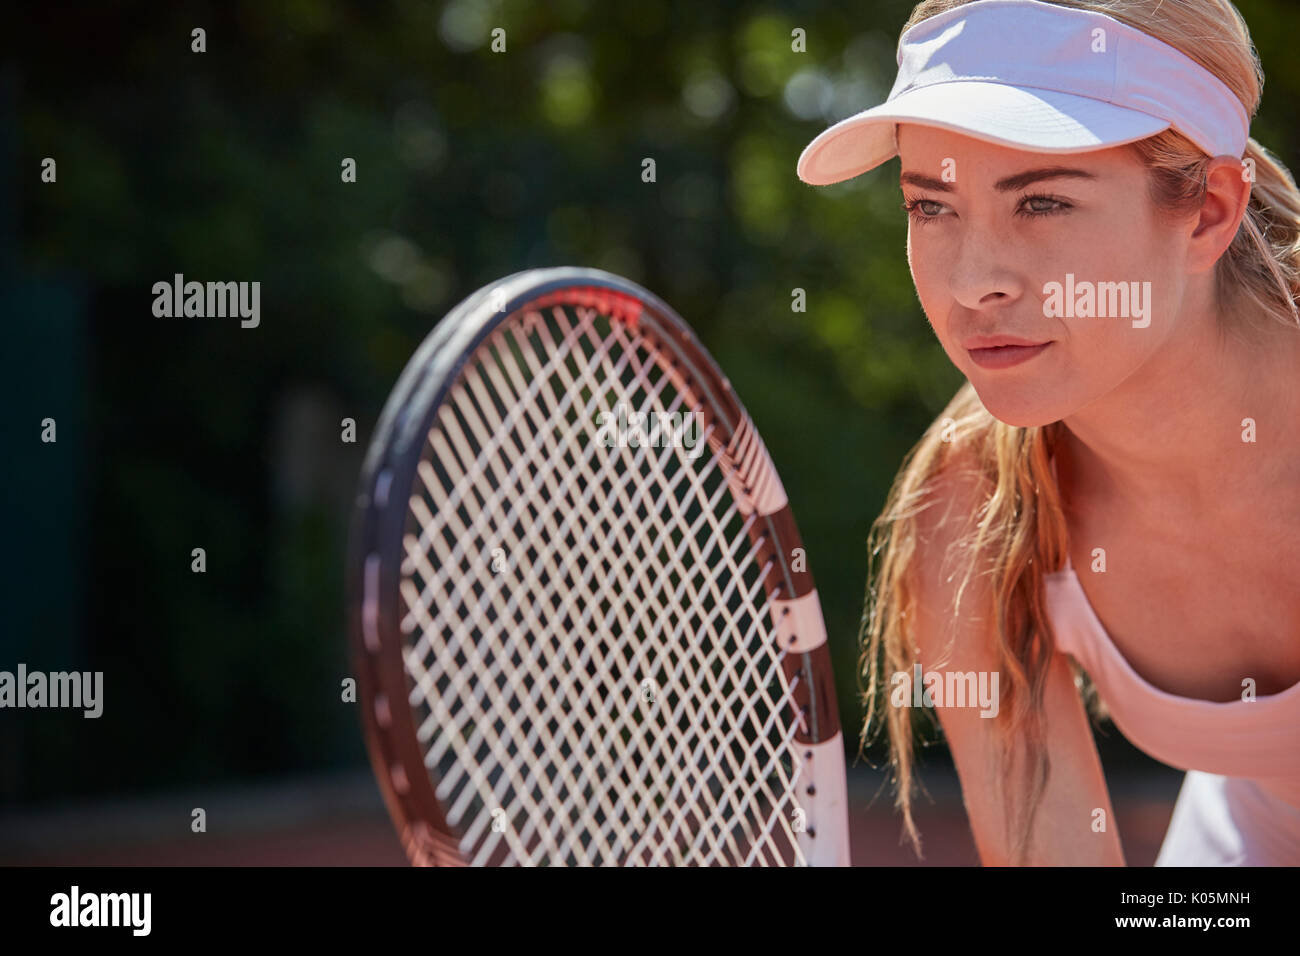 L'accent jeunes tennis player holding tennis racket Banque D'Images